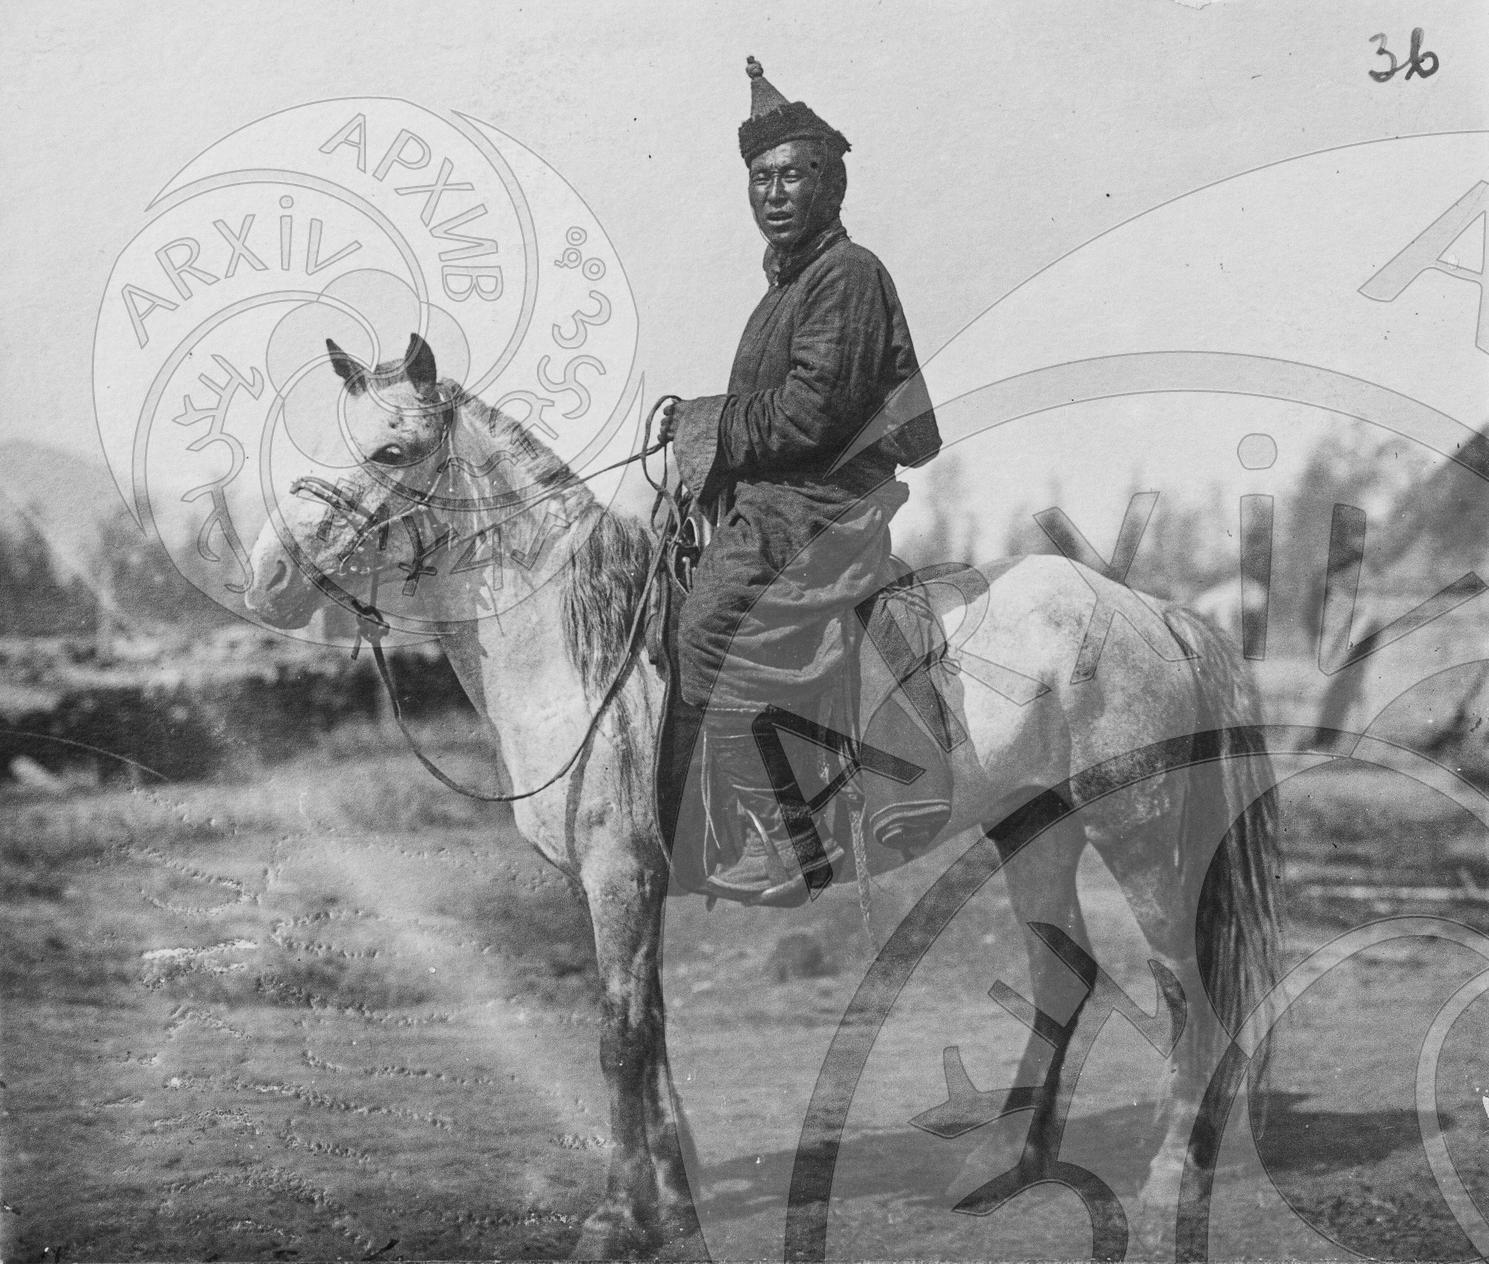 Младший чиновник в национальном костюме верхом на лошади. Хорошо видна красивая порода тувинской лошади